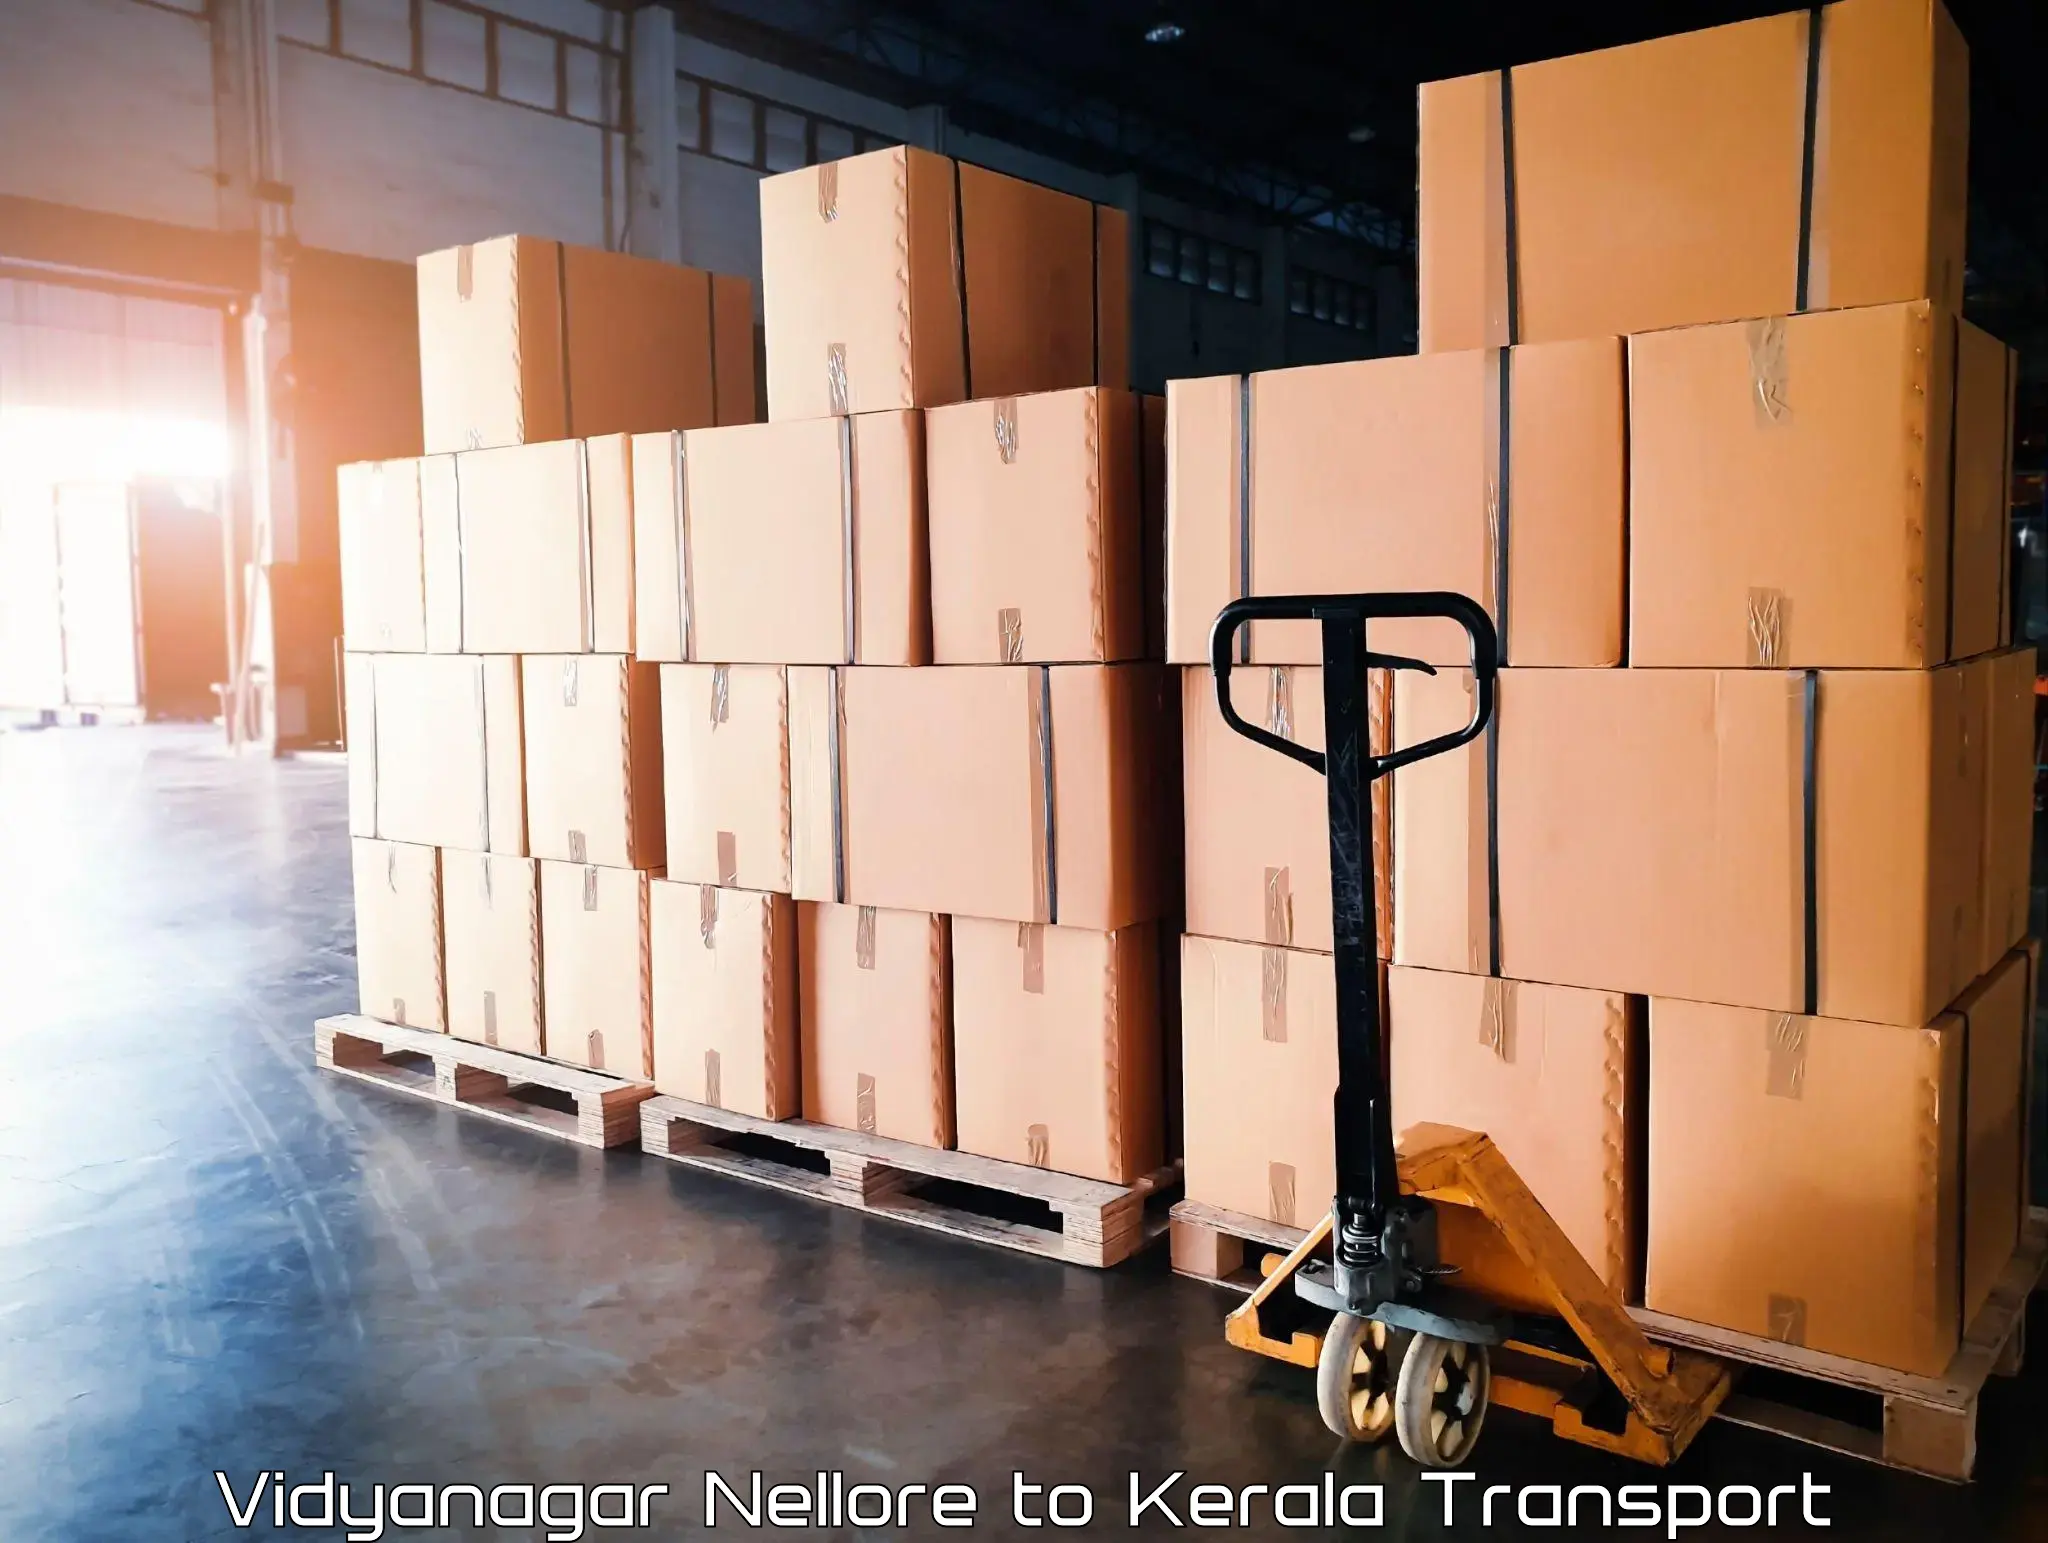 International cargo transportation services Vidyanagar Nellore to Shoranur